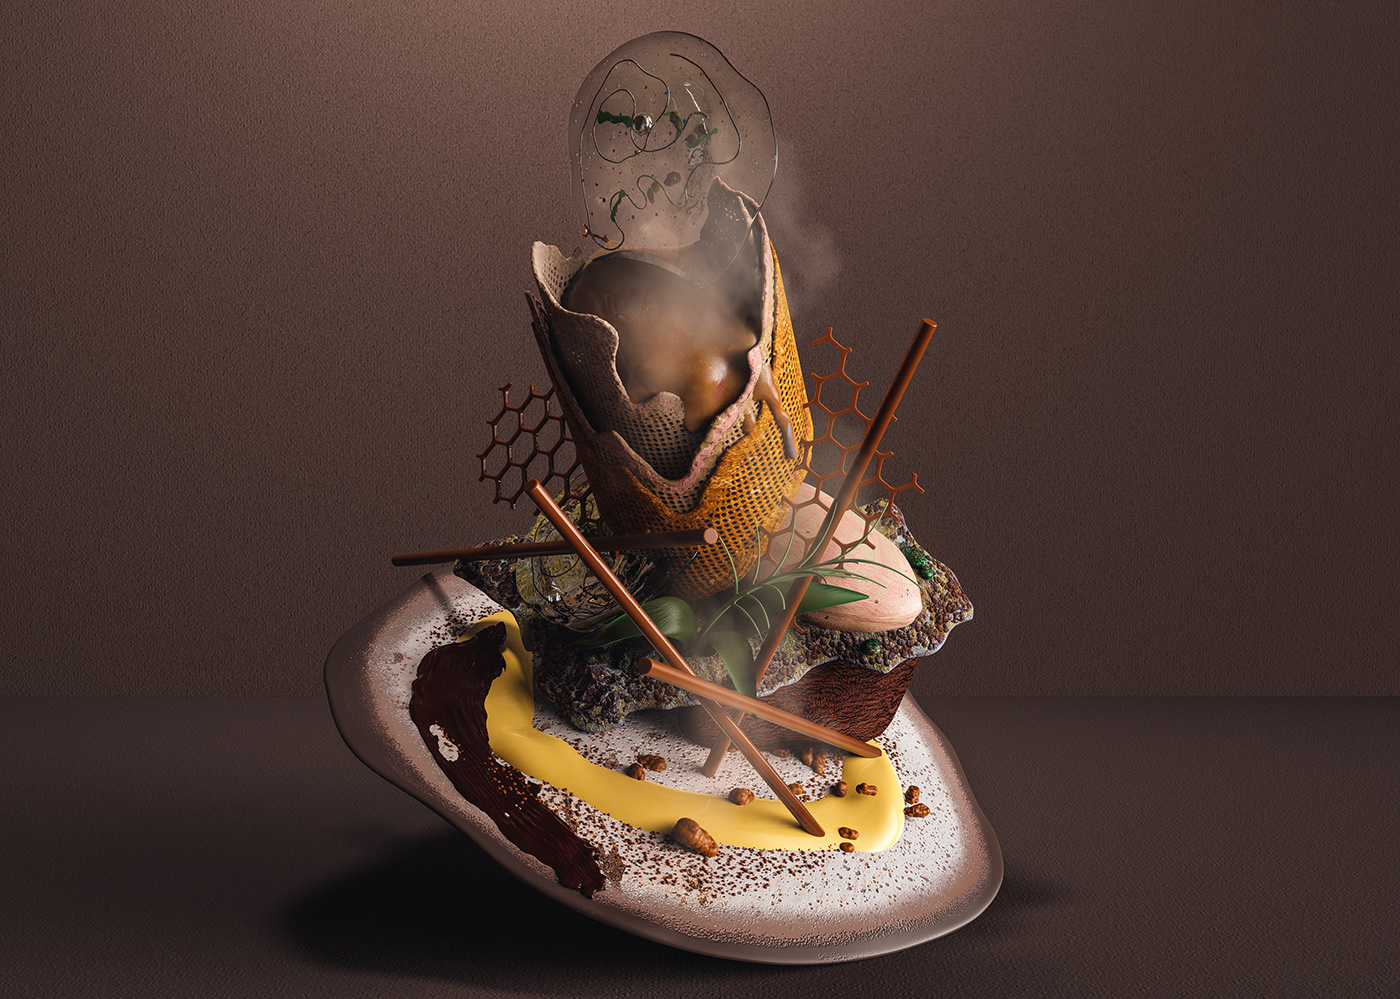 3D avant-garde colors cousine design gastronomic ILLUSTRATION  knowledge textures visual